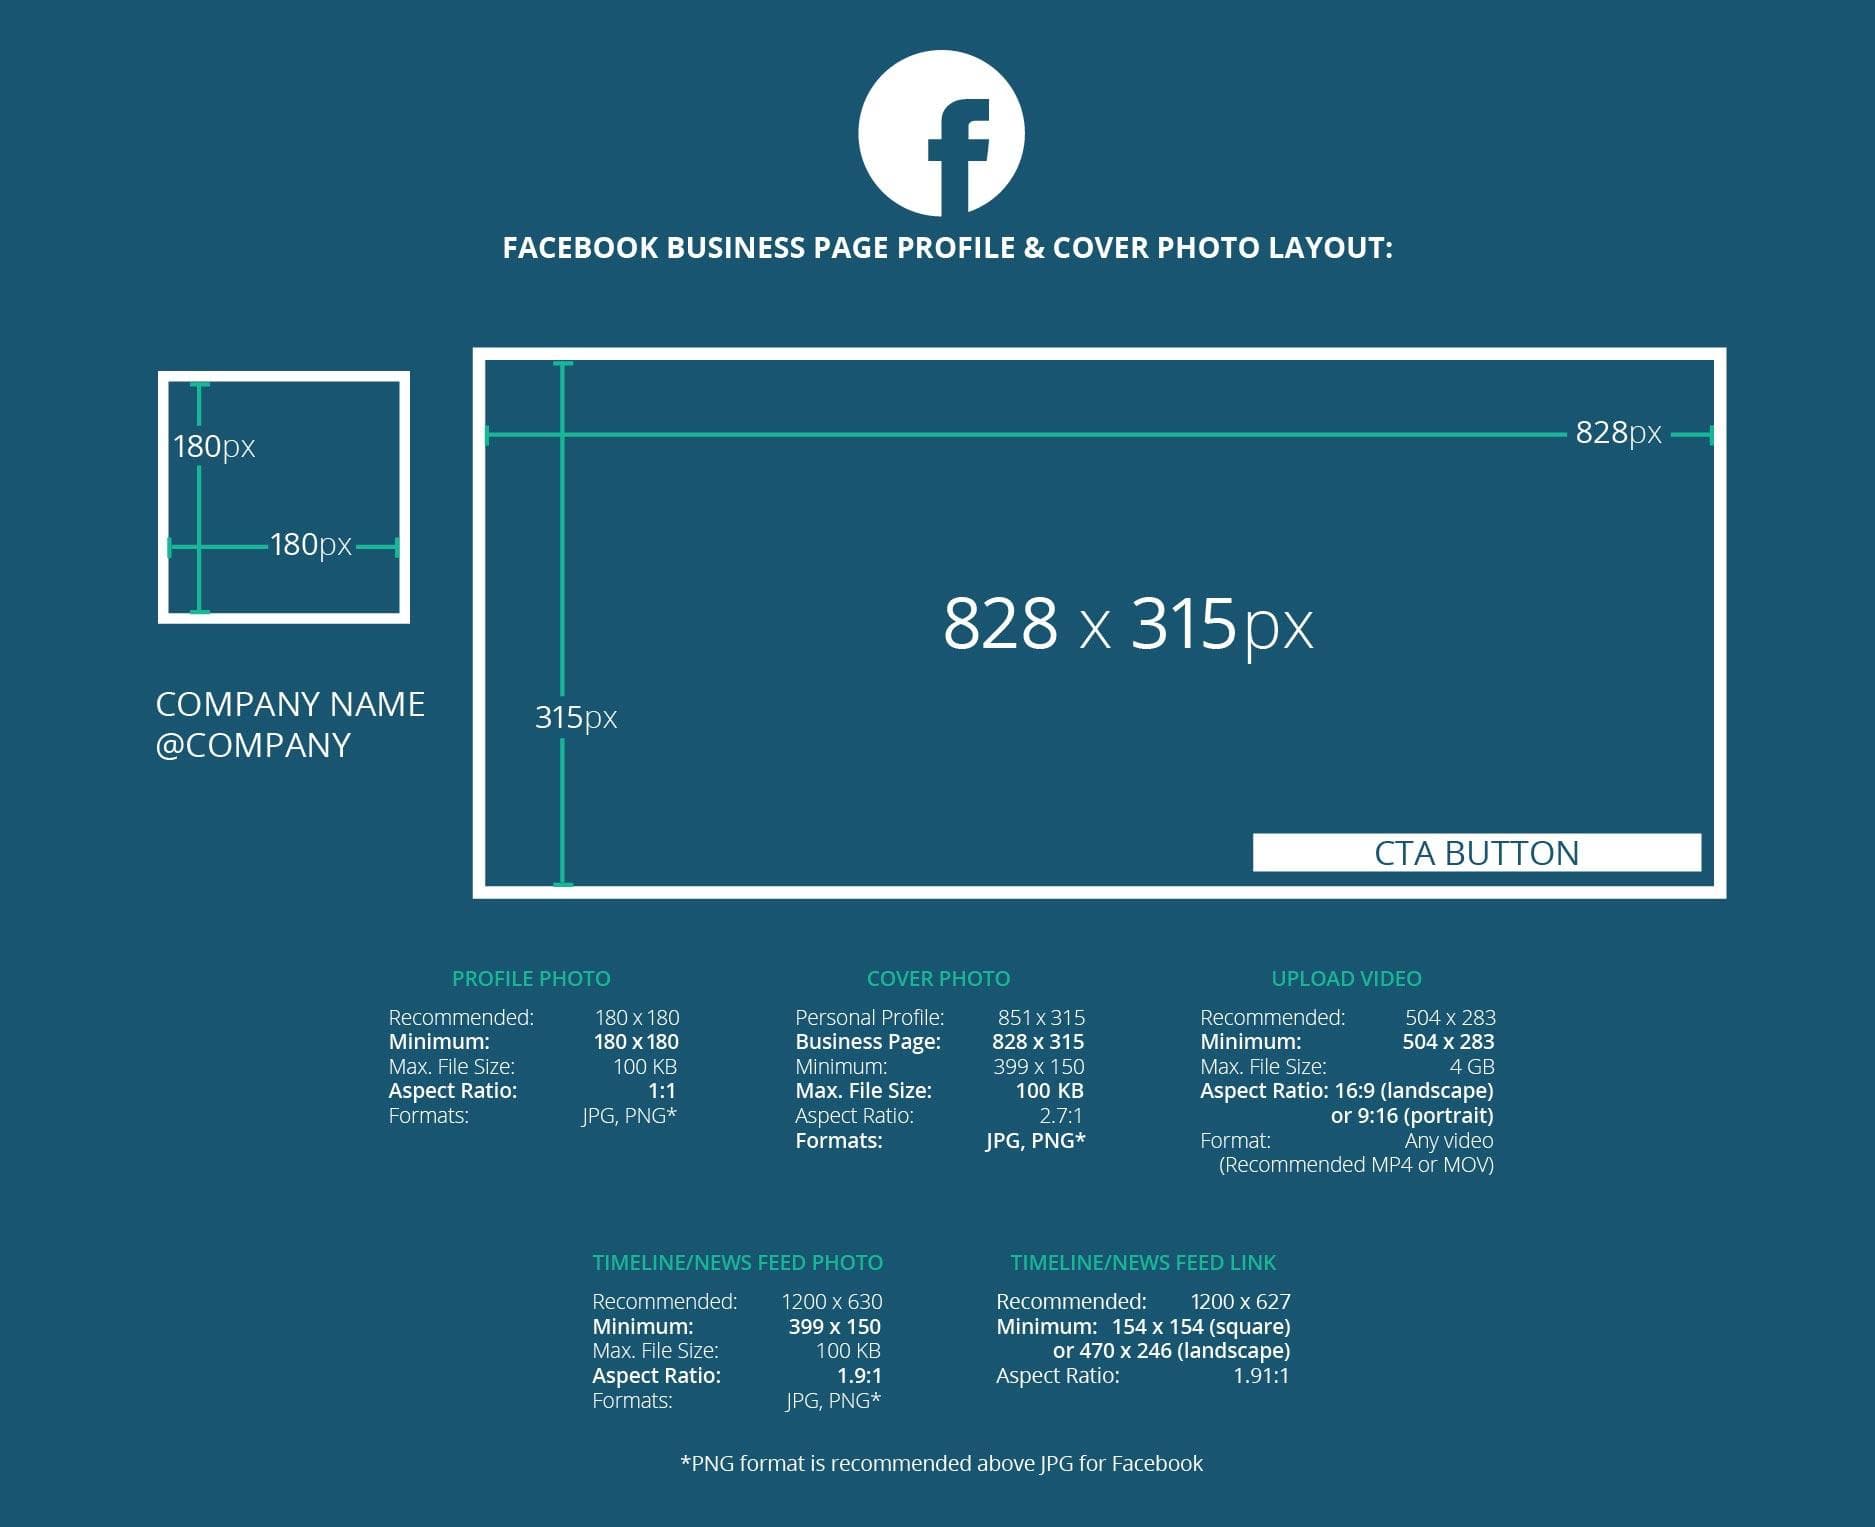 Infographic kích thước ảnh Facebook:
Infographic kích thước ảnh Facebook là một cách tuyệt vời để tăng tương tác và thu hút khách hàng của bạn. Nó giúp bạn thể hiện sự chuyên nghiệp và chia sẻ thông tin một cách rõ ràng và trực quan. Bạn sẽ thấy một lượng lớn khách hàng đến từ mạng xã hội và tăng tiềm năng thu nhập.